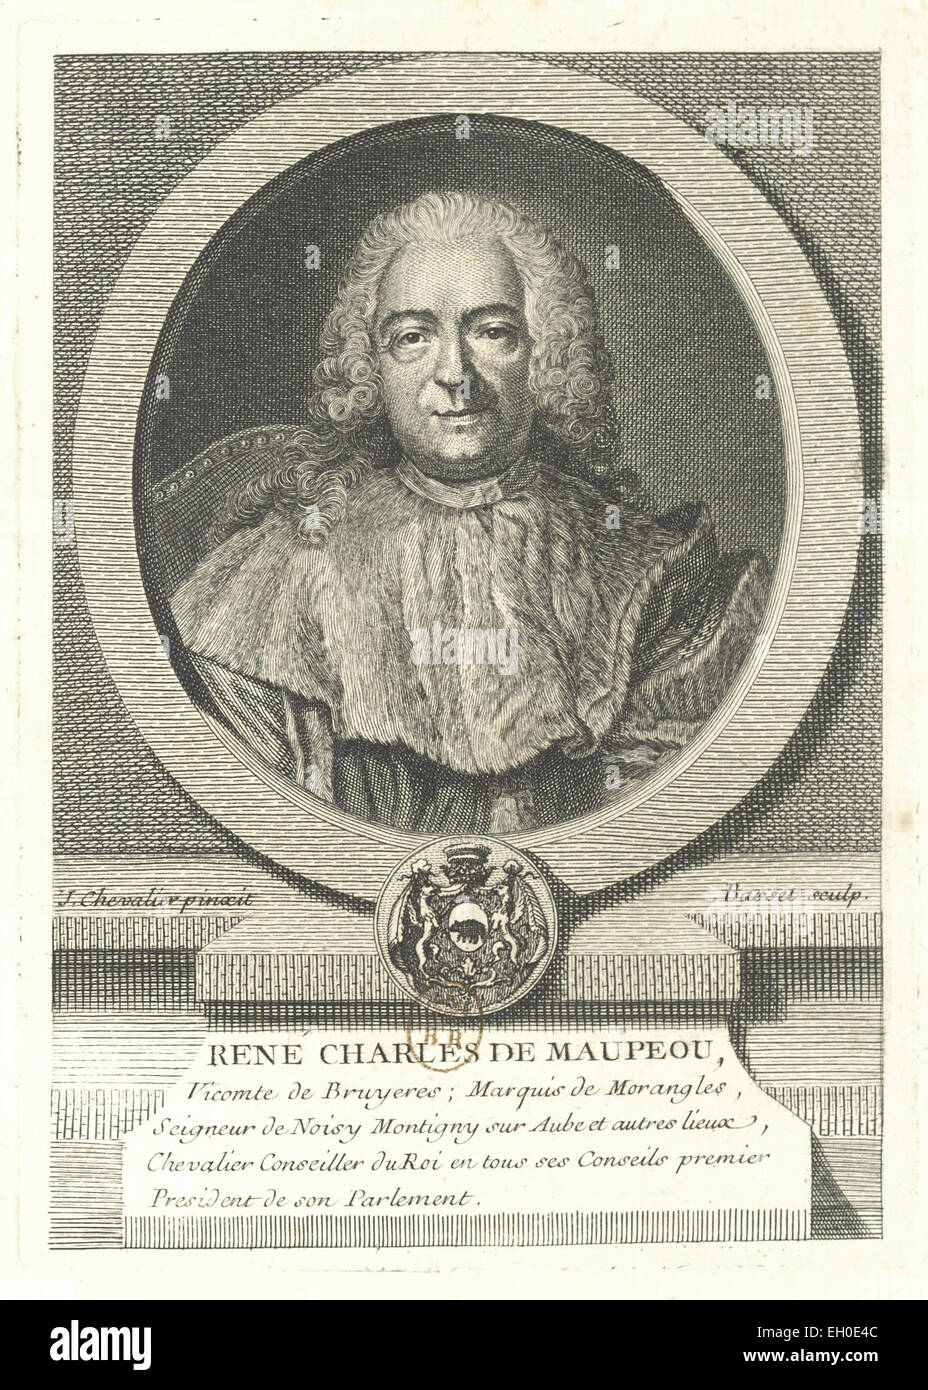 René Charles de Maupeou (1688 - 1755), magistrat, Premier Président du Parlement de Paris, Chancelier de France, Garde des Sceaux sous Louis XV. Stock Photo